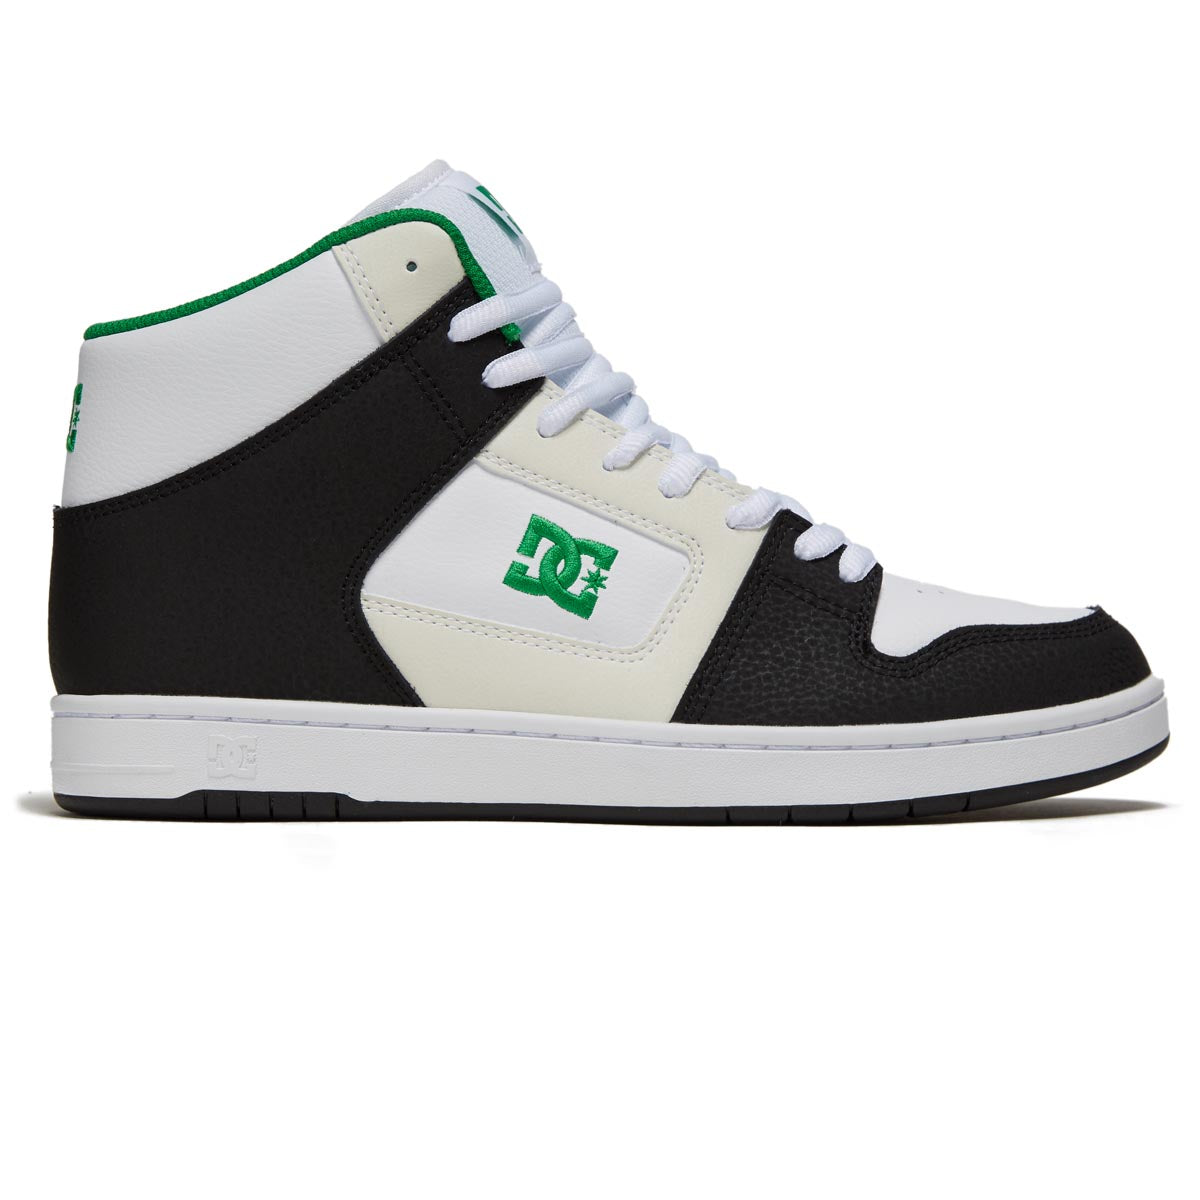 DC Manteca 4 Hi Shoes - Black/White/Green image 1